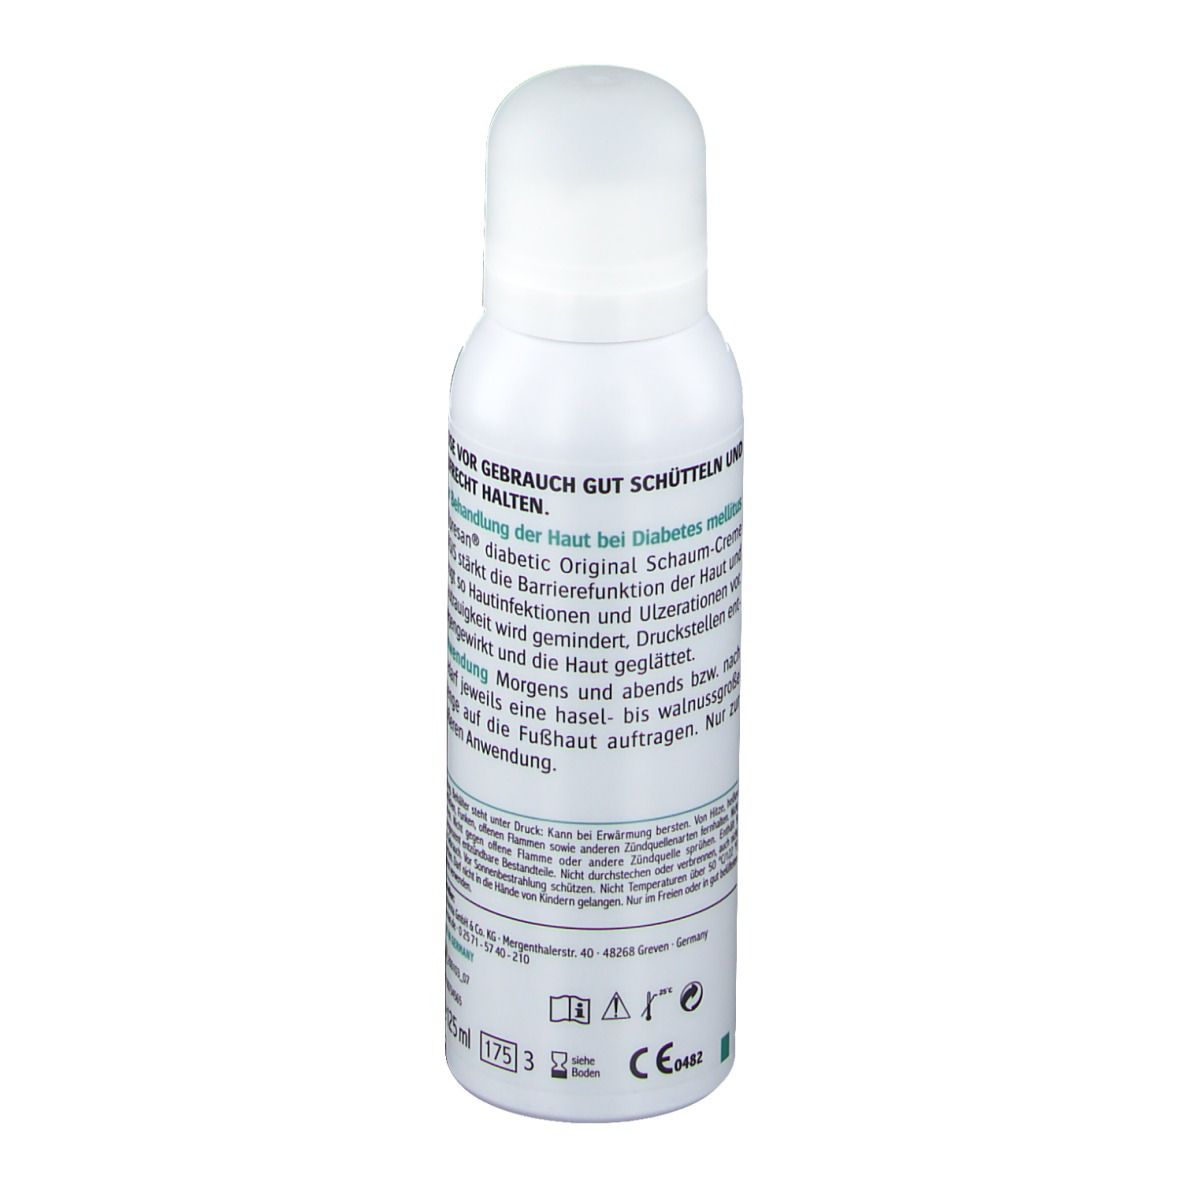 Allpresan® diabetic Original Schaum-Creme BASIS Trockene und empfindliche Haut